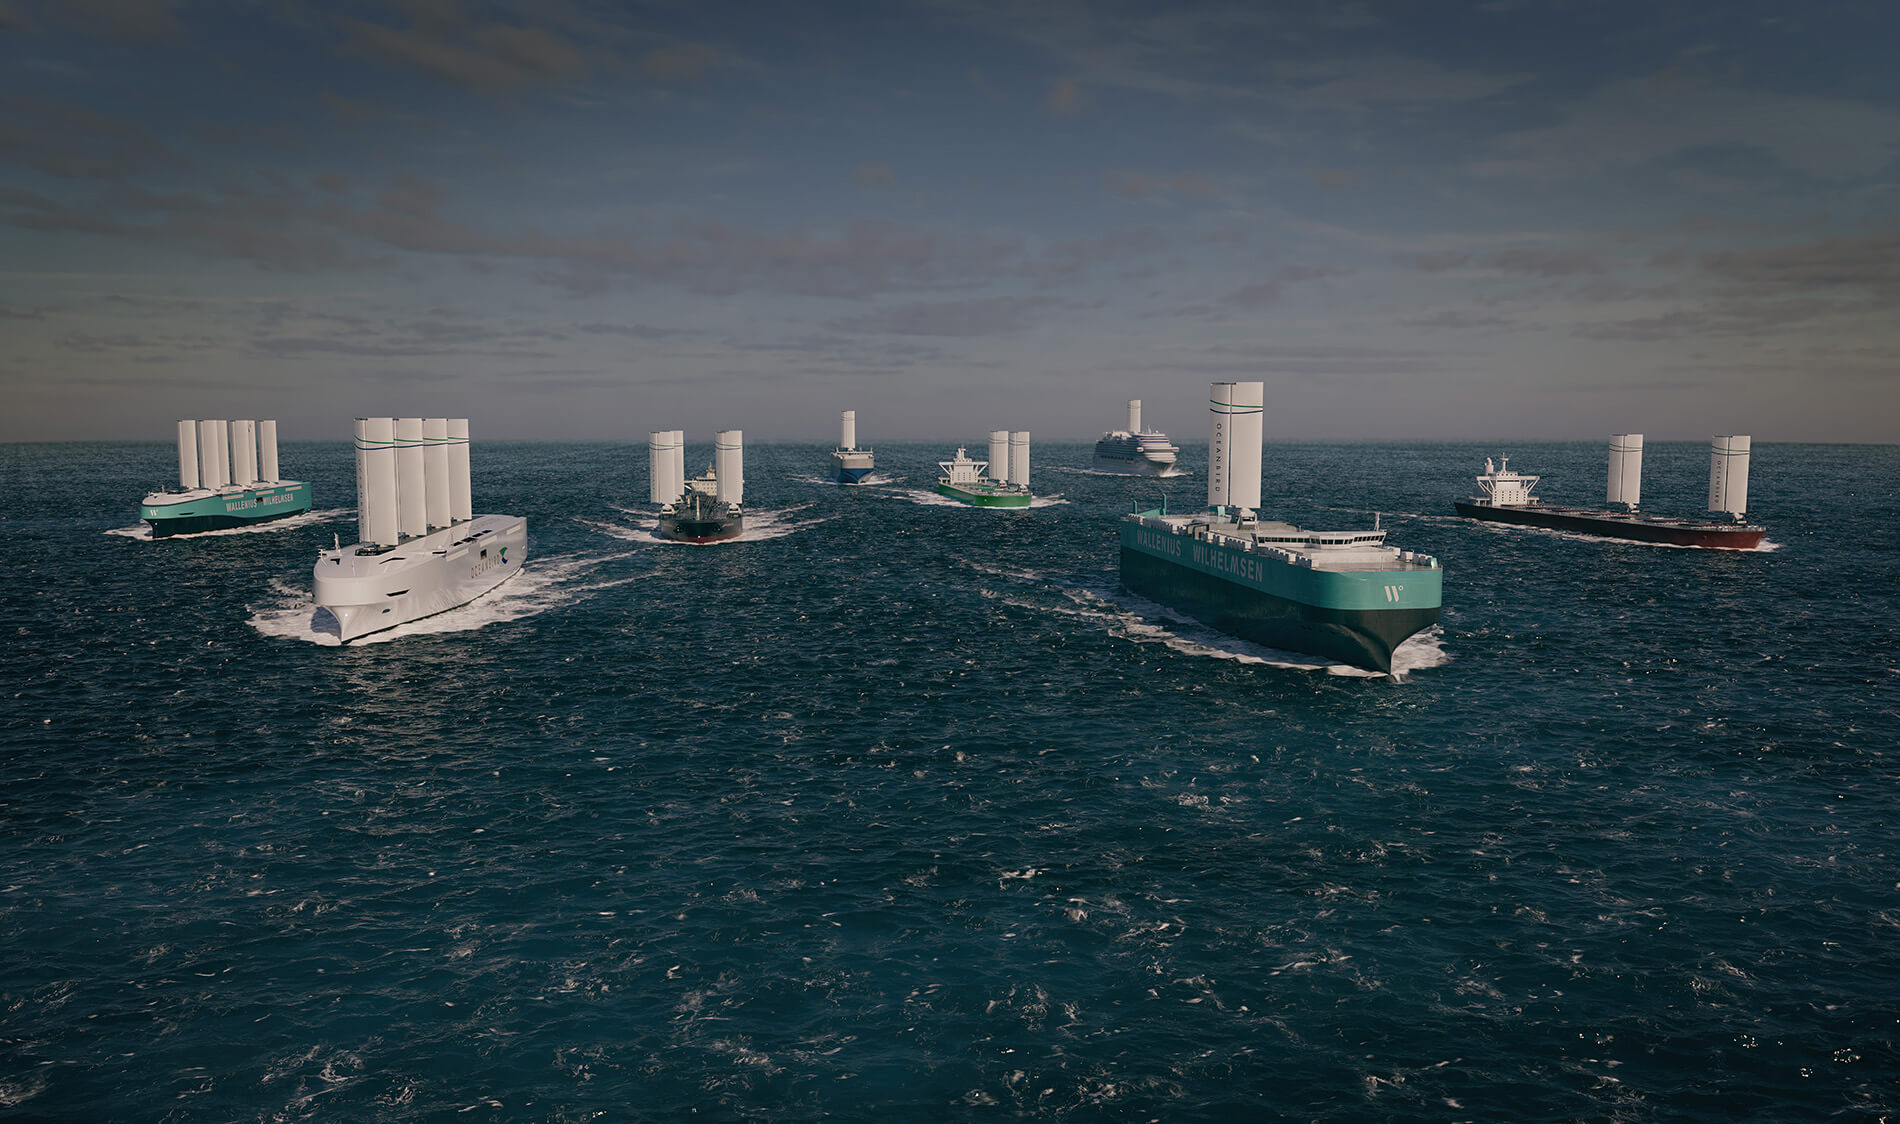 Armada of windships medium size